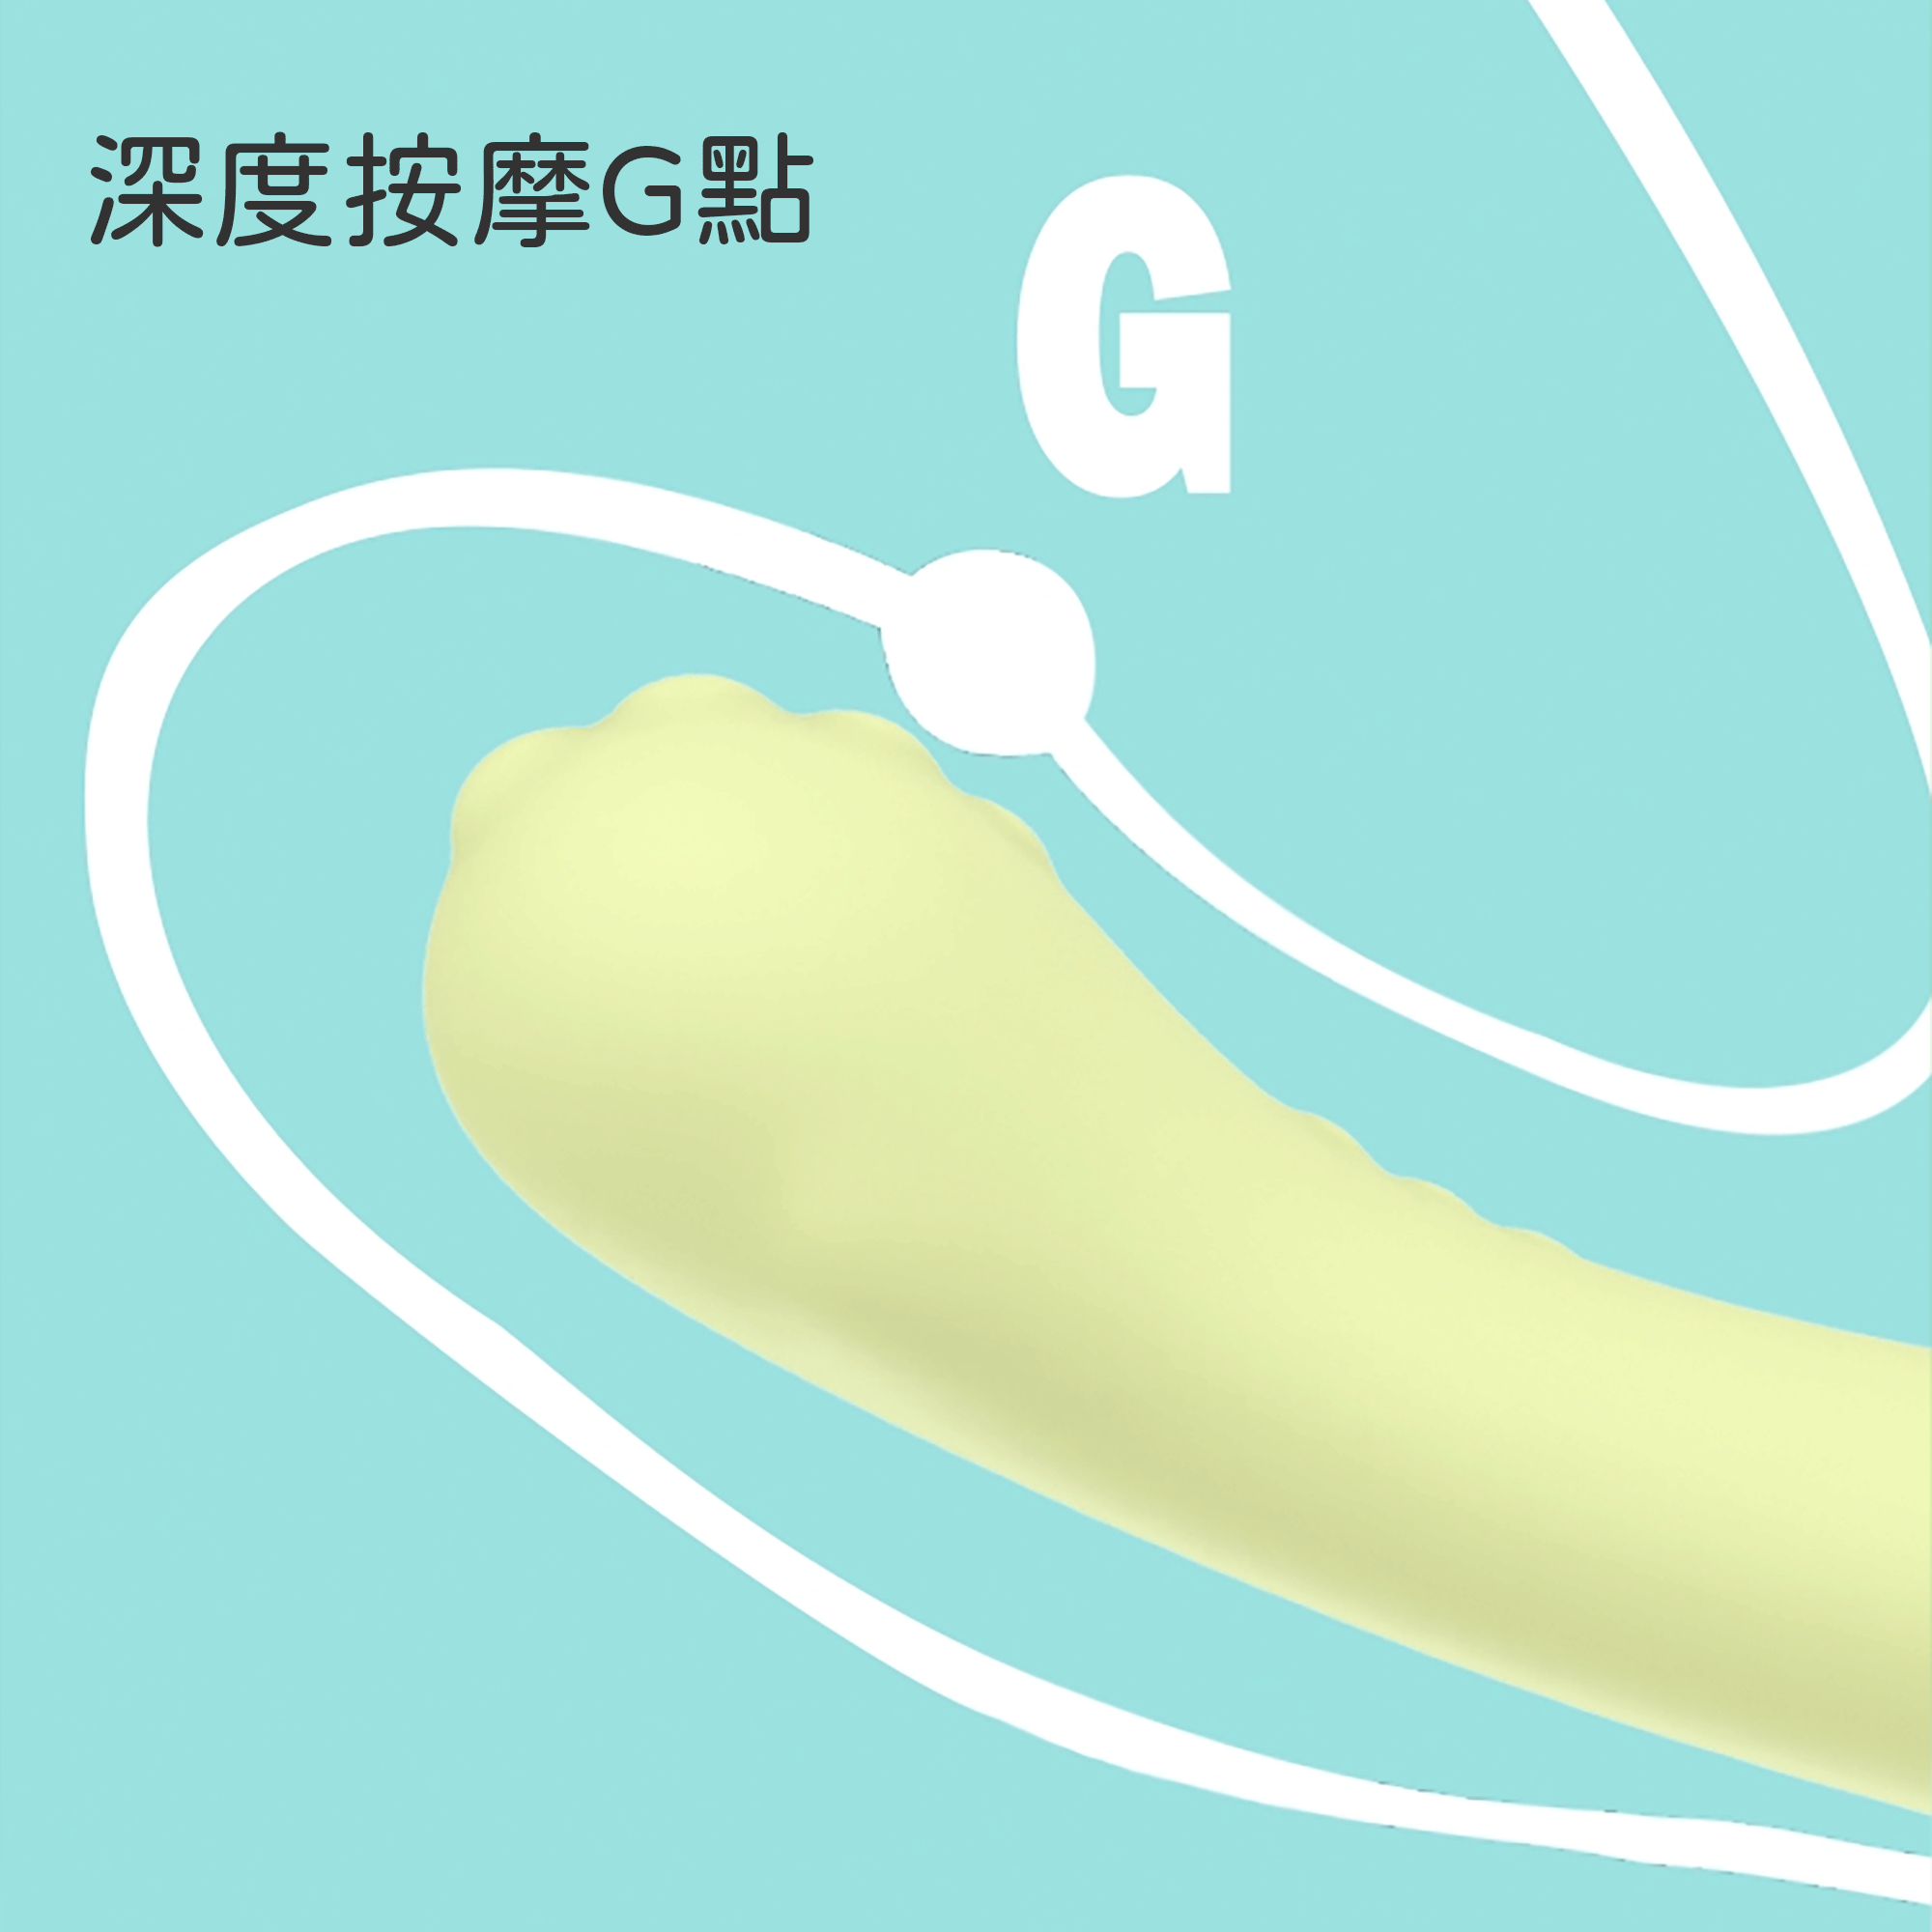 小怪獸-G點怪獸棒-哥斯拉大師-product-image-7